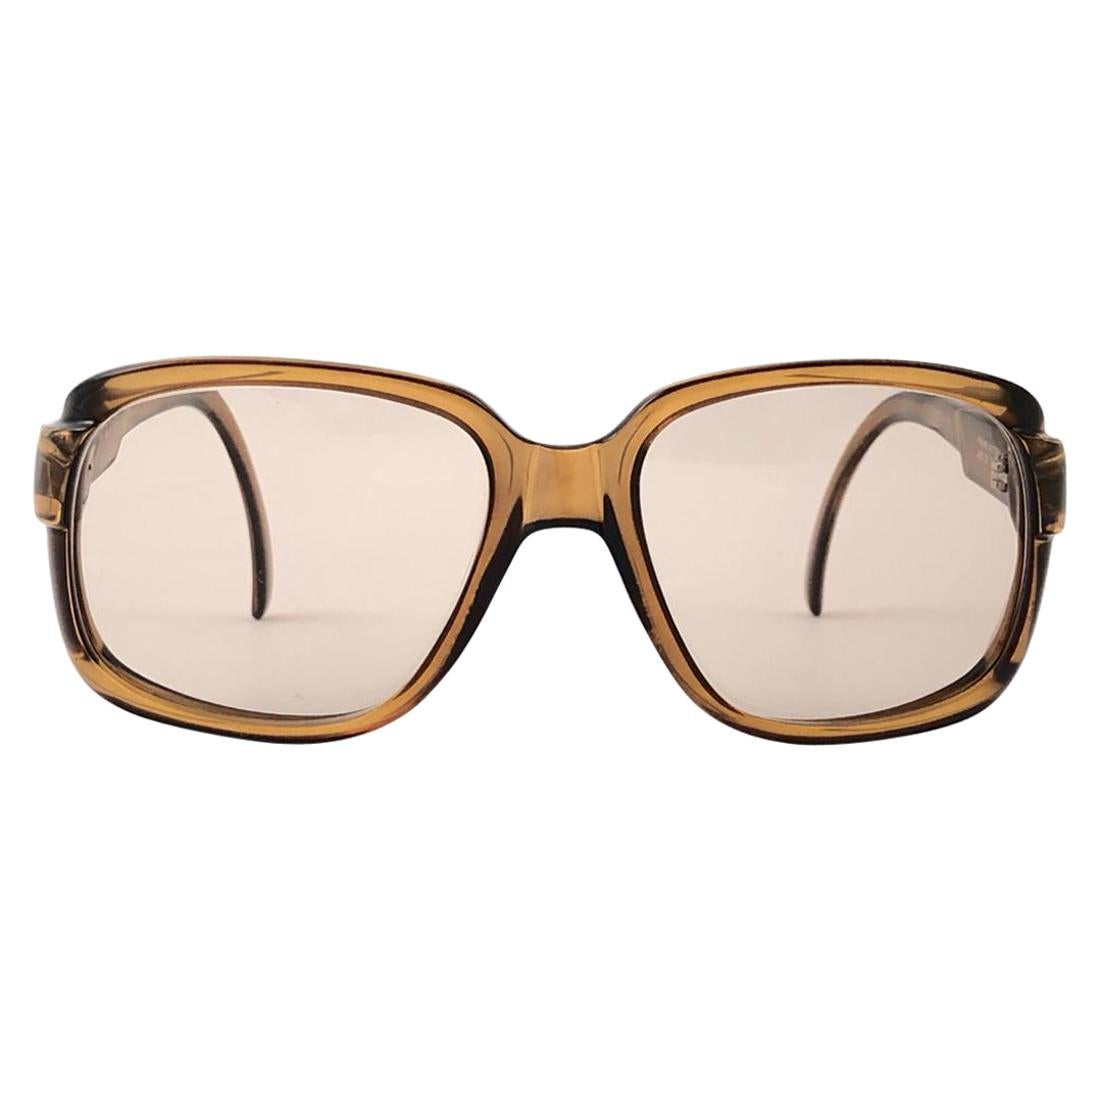 CHRISTIAN DIOR oversized vintage Sonnenbrille in beige Accessoires Sonnenbrillen Retro Brillen Org 